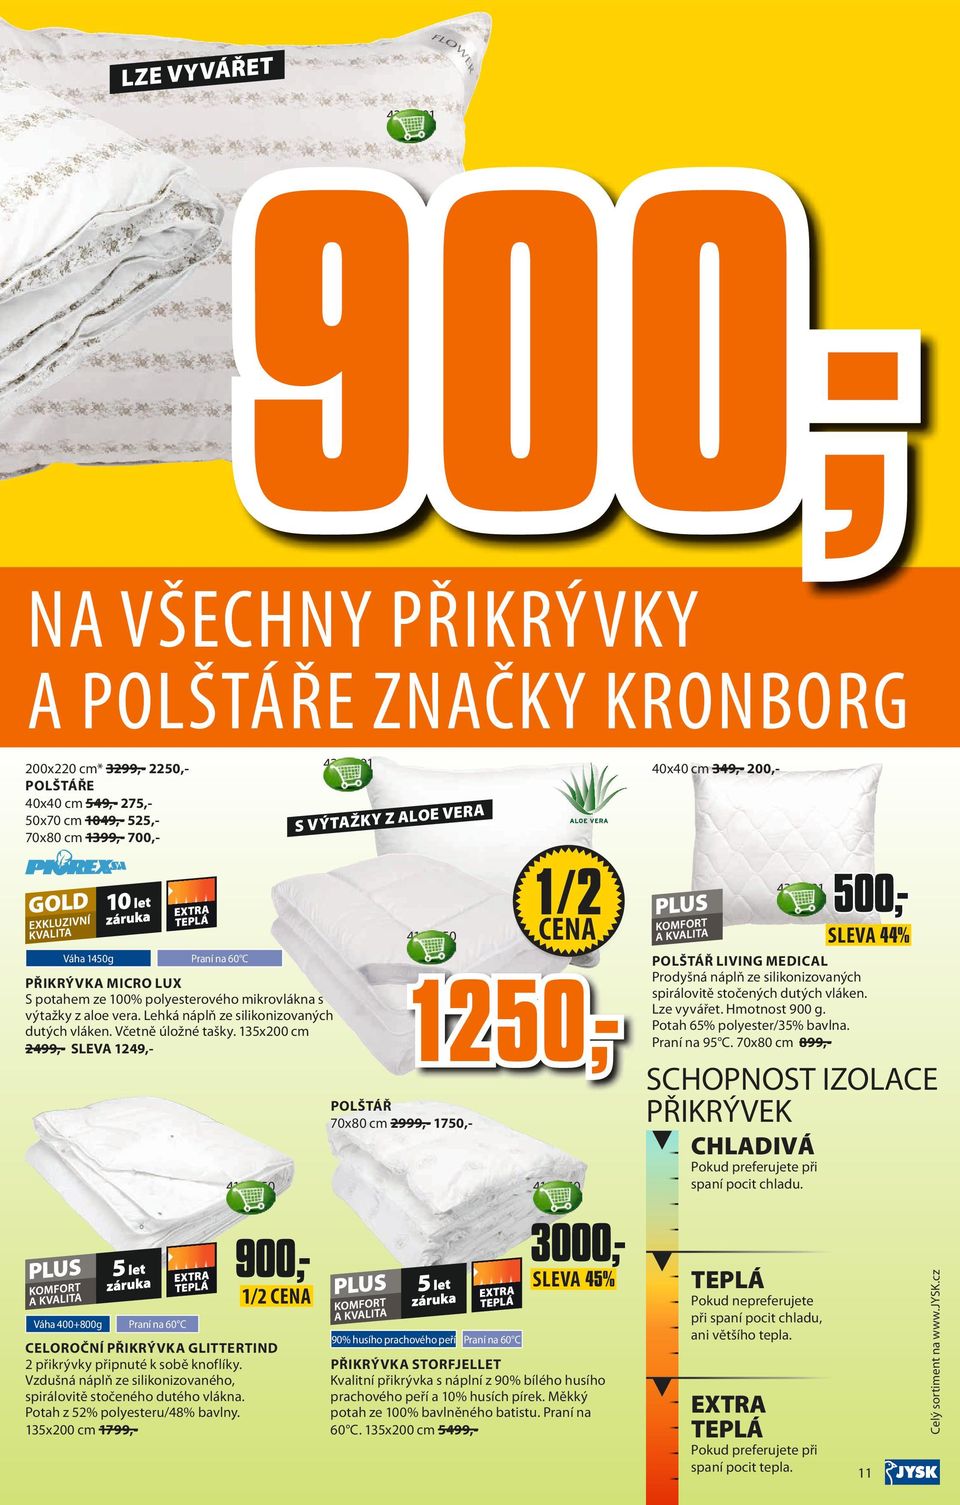 1250,KANCELÁŘSKÁ ŽIDLE SUNDS 85,- 250,- 1CENA 60% CENA SUPER SLEVA - PDF  Free Download